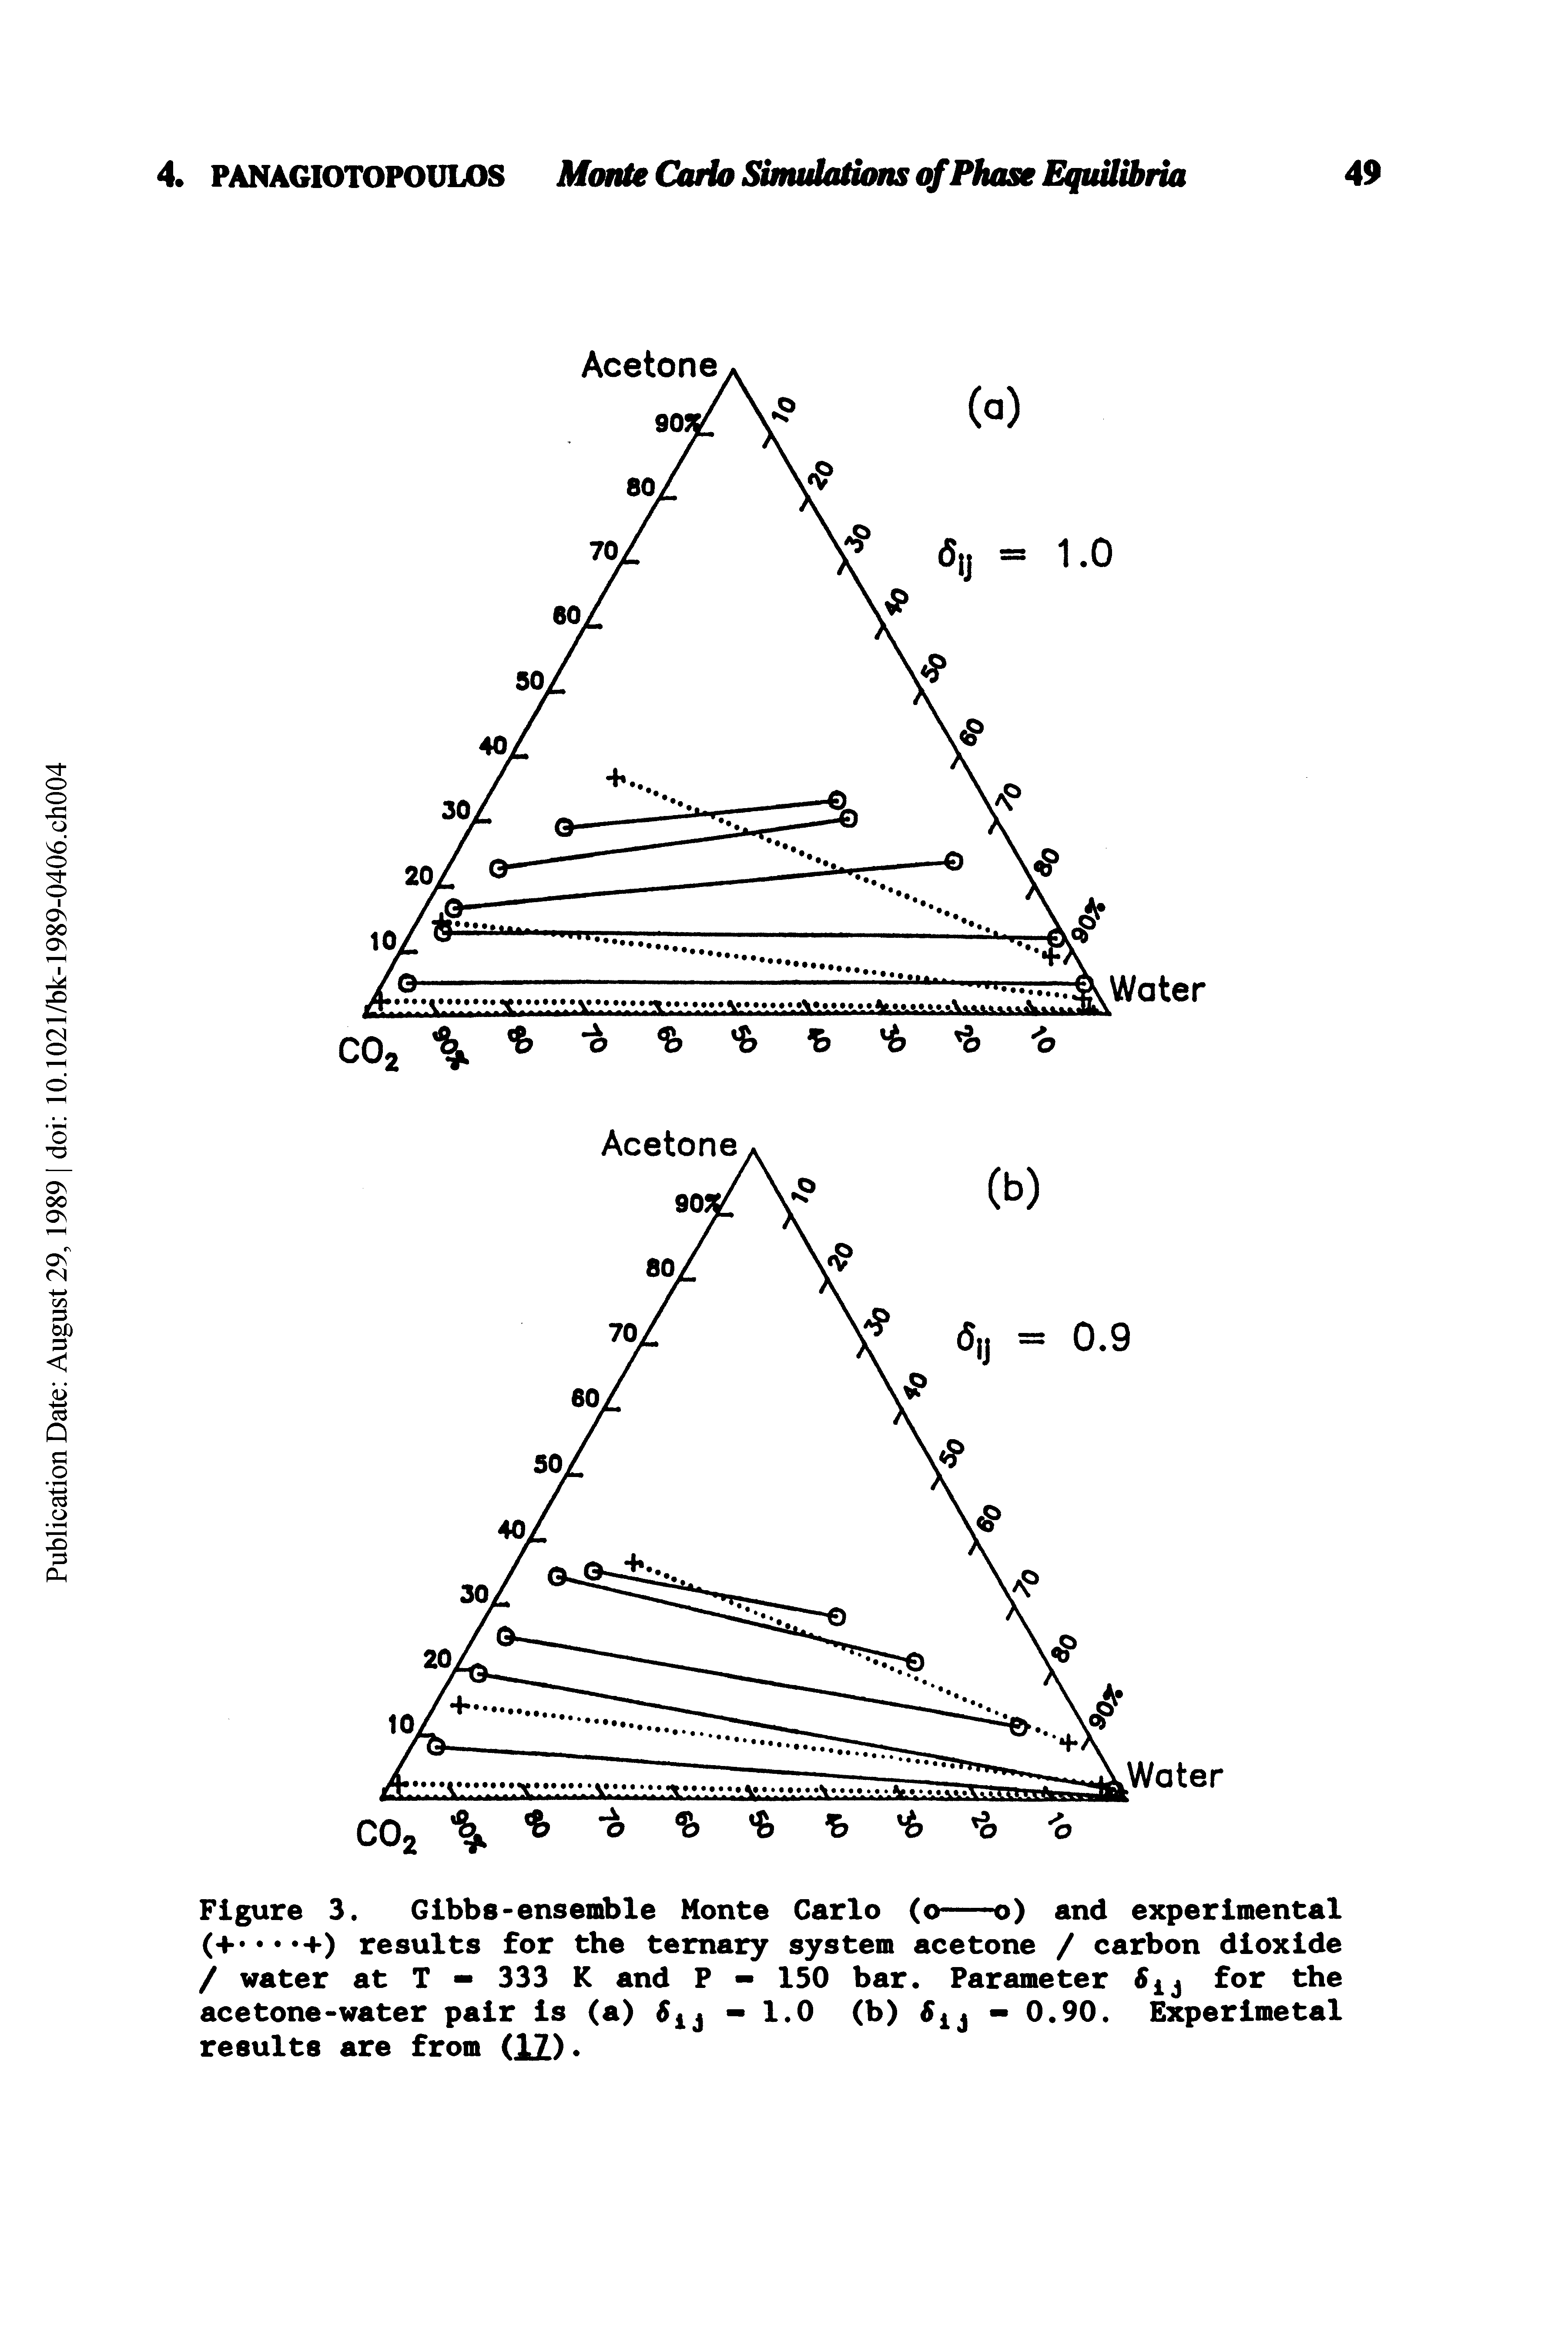 Figure 3. Gibbs-ensemble Monte Carlo (o-------o) and experimental...